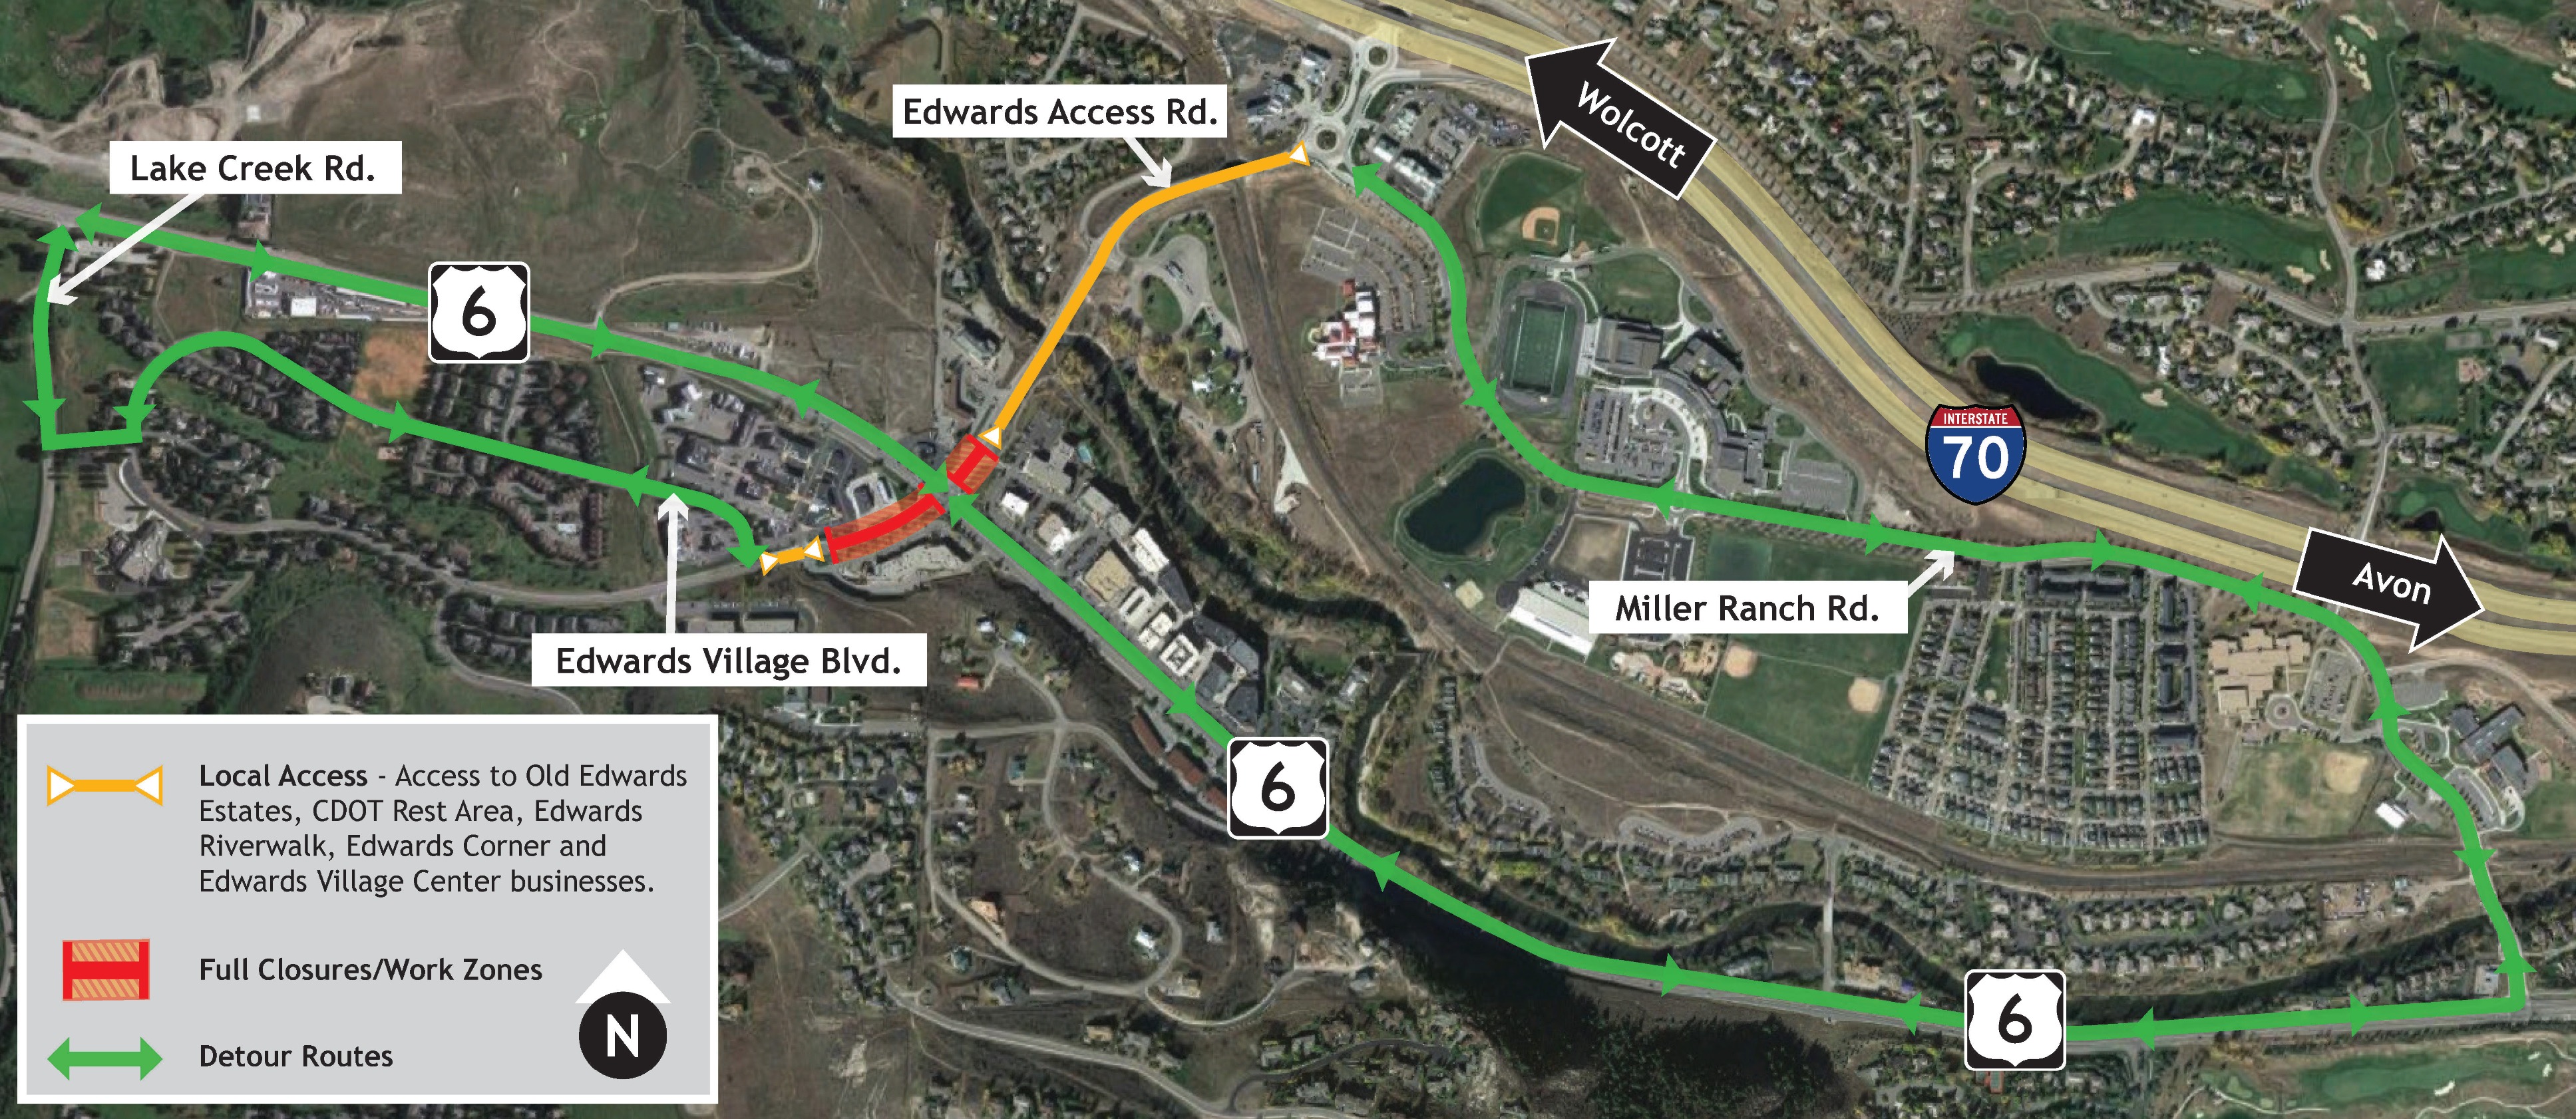 Edwards Access Road Detour Map 9.29 detail image